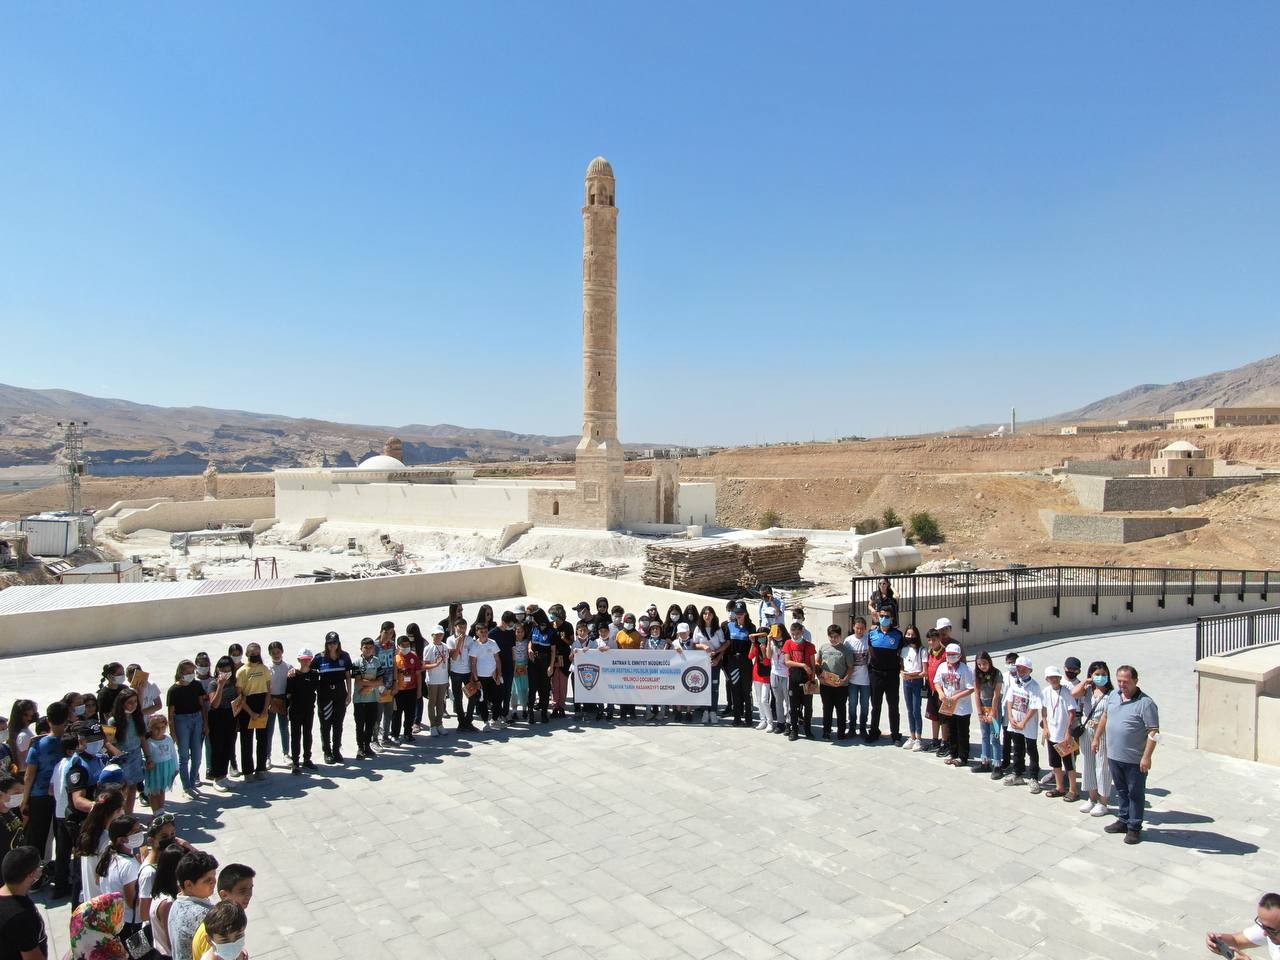 Türkiye’nin farklı kentlerinden gelen 45 öğrenci, Hasankeyf’le bütünleşti